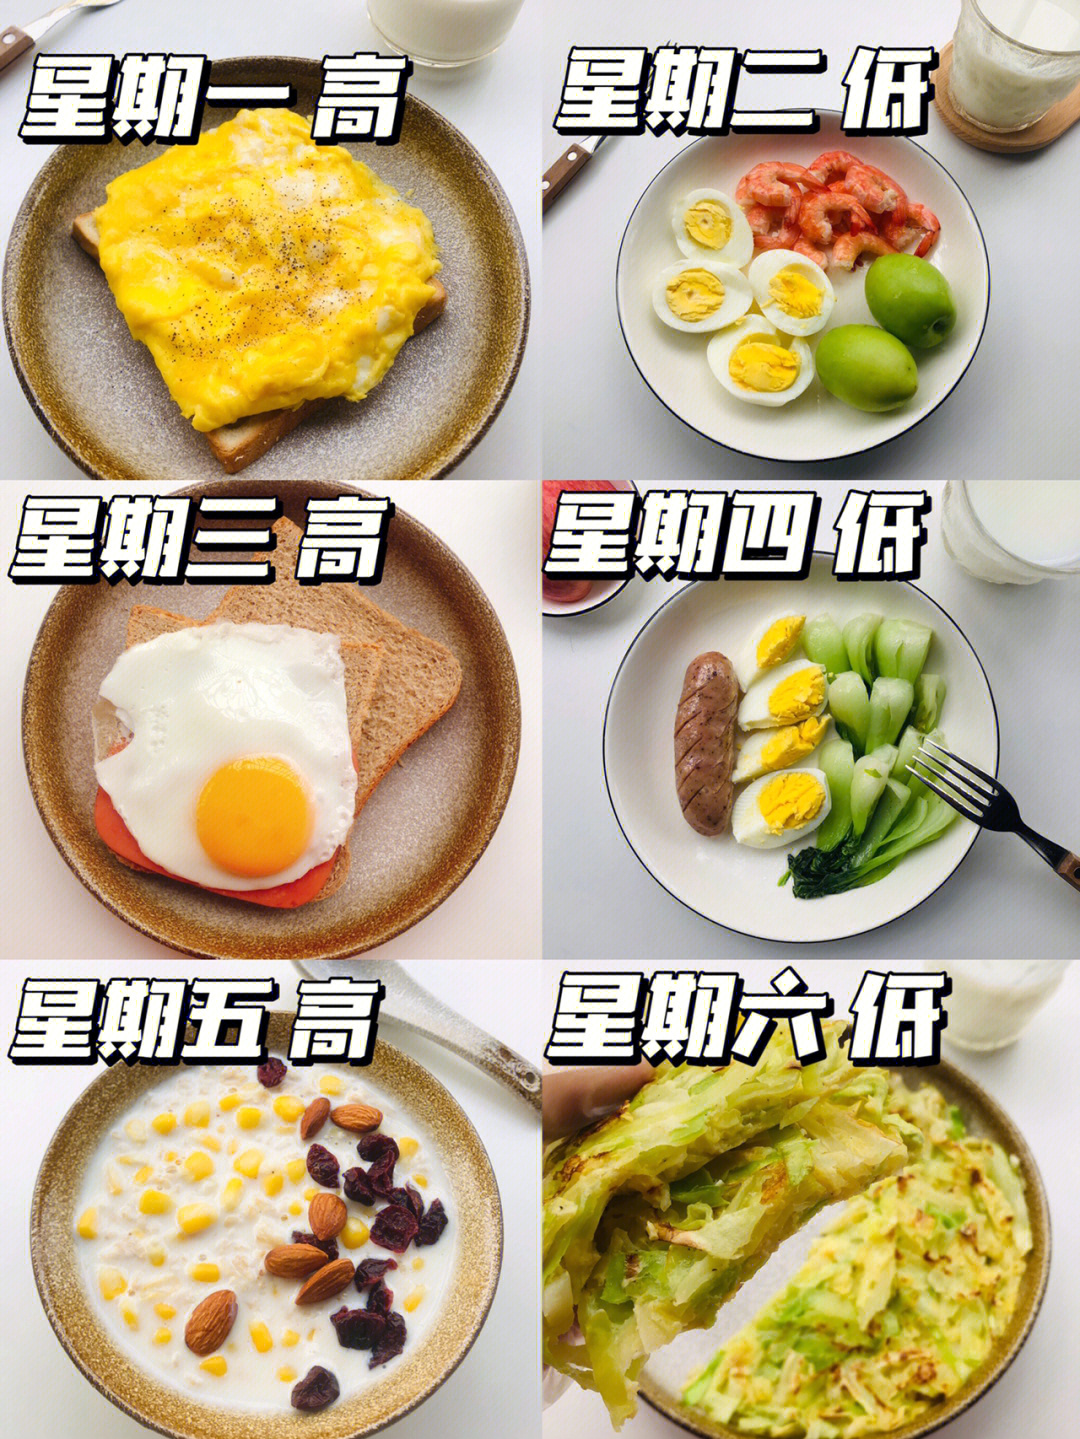 早餐食谱每周图片